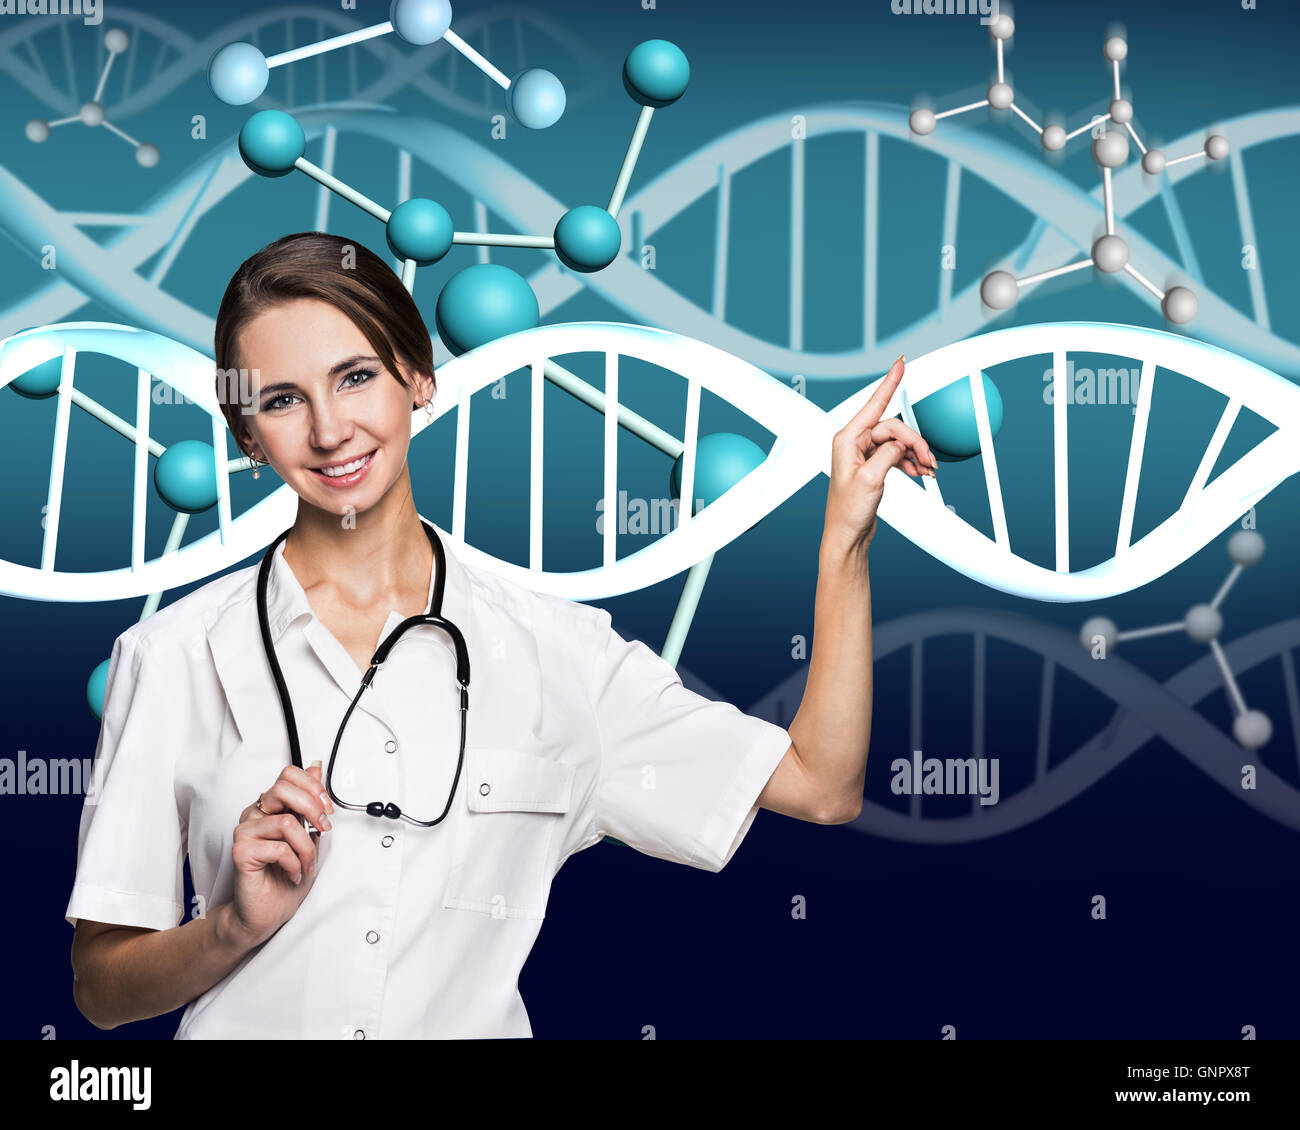 Lächelnde Ärztin im weißen Kittel und DNA-Molekül Formel auf blauem Hintergrund Stockfoto